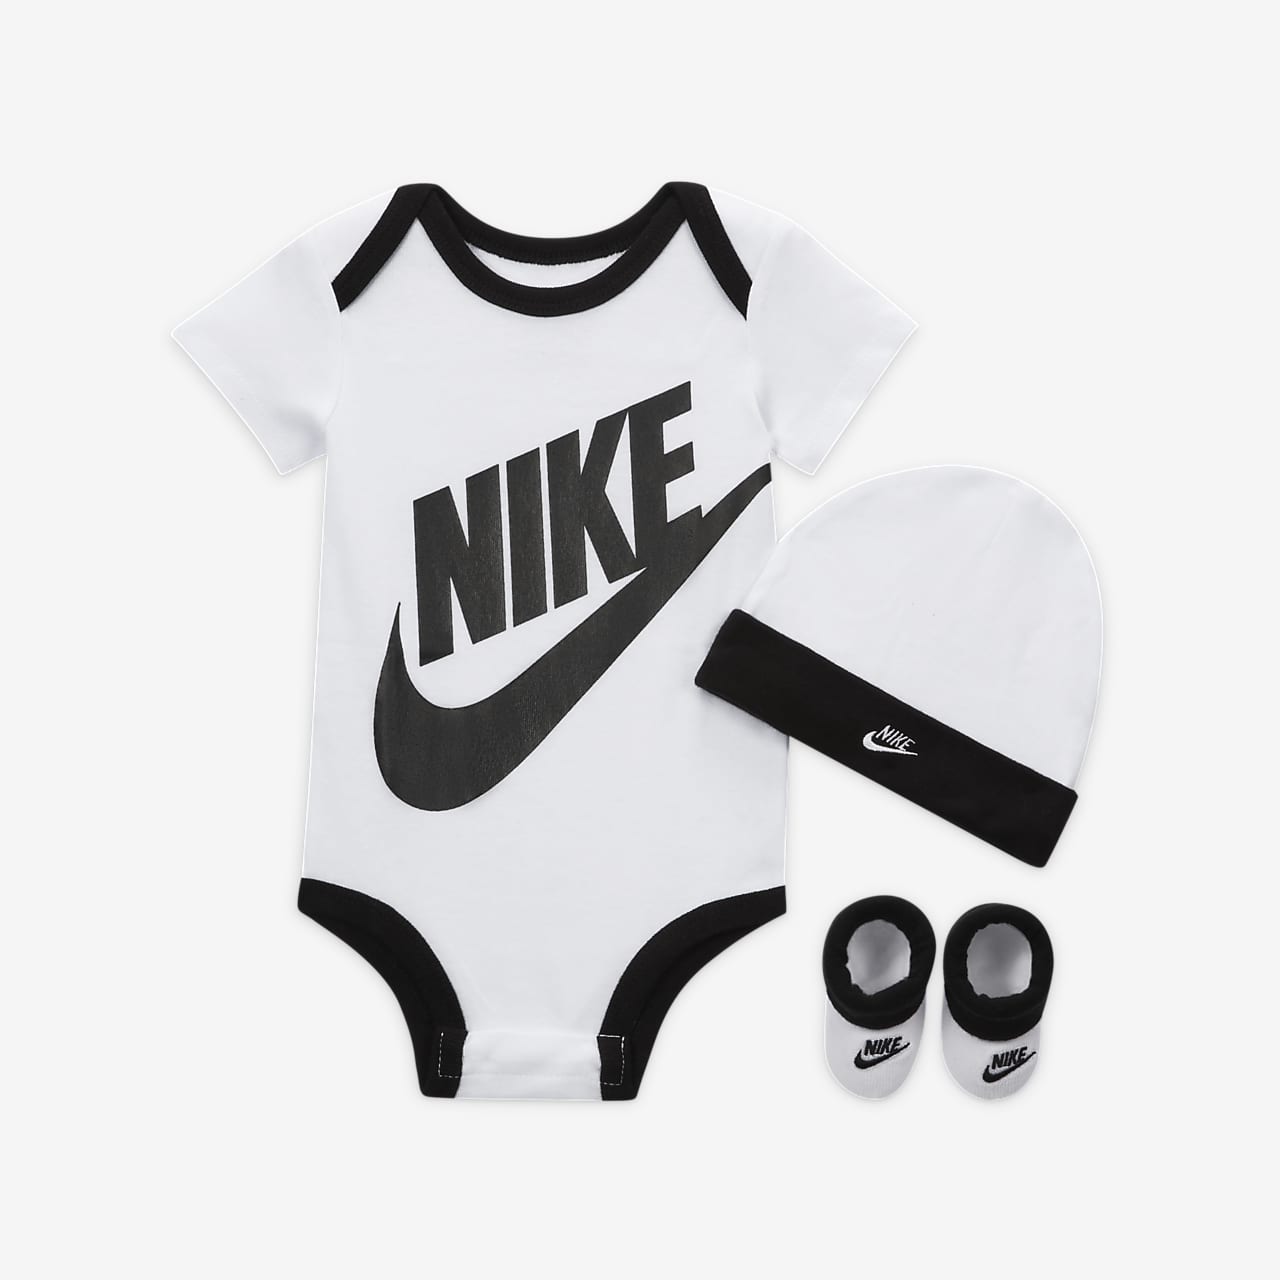 Conjunto de body, gorro calzado para bebés (0 a meses) Nike. Nike.com